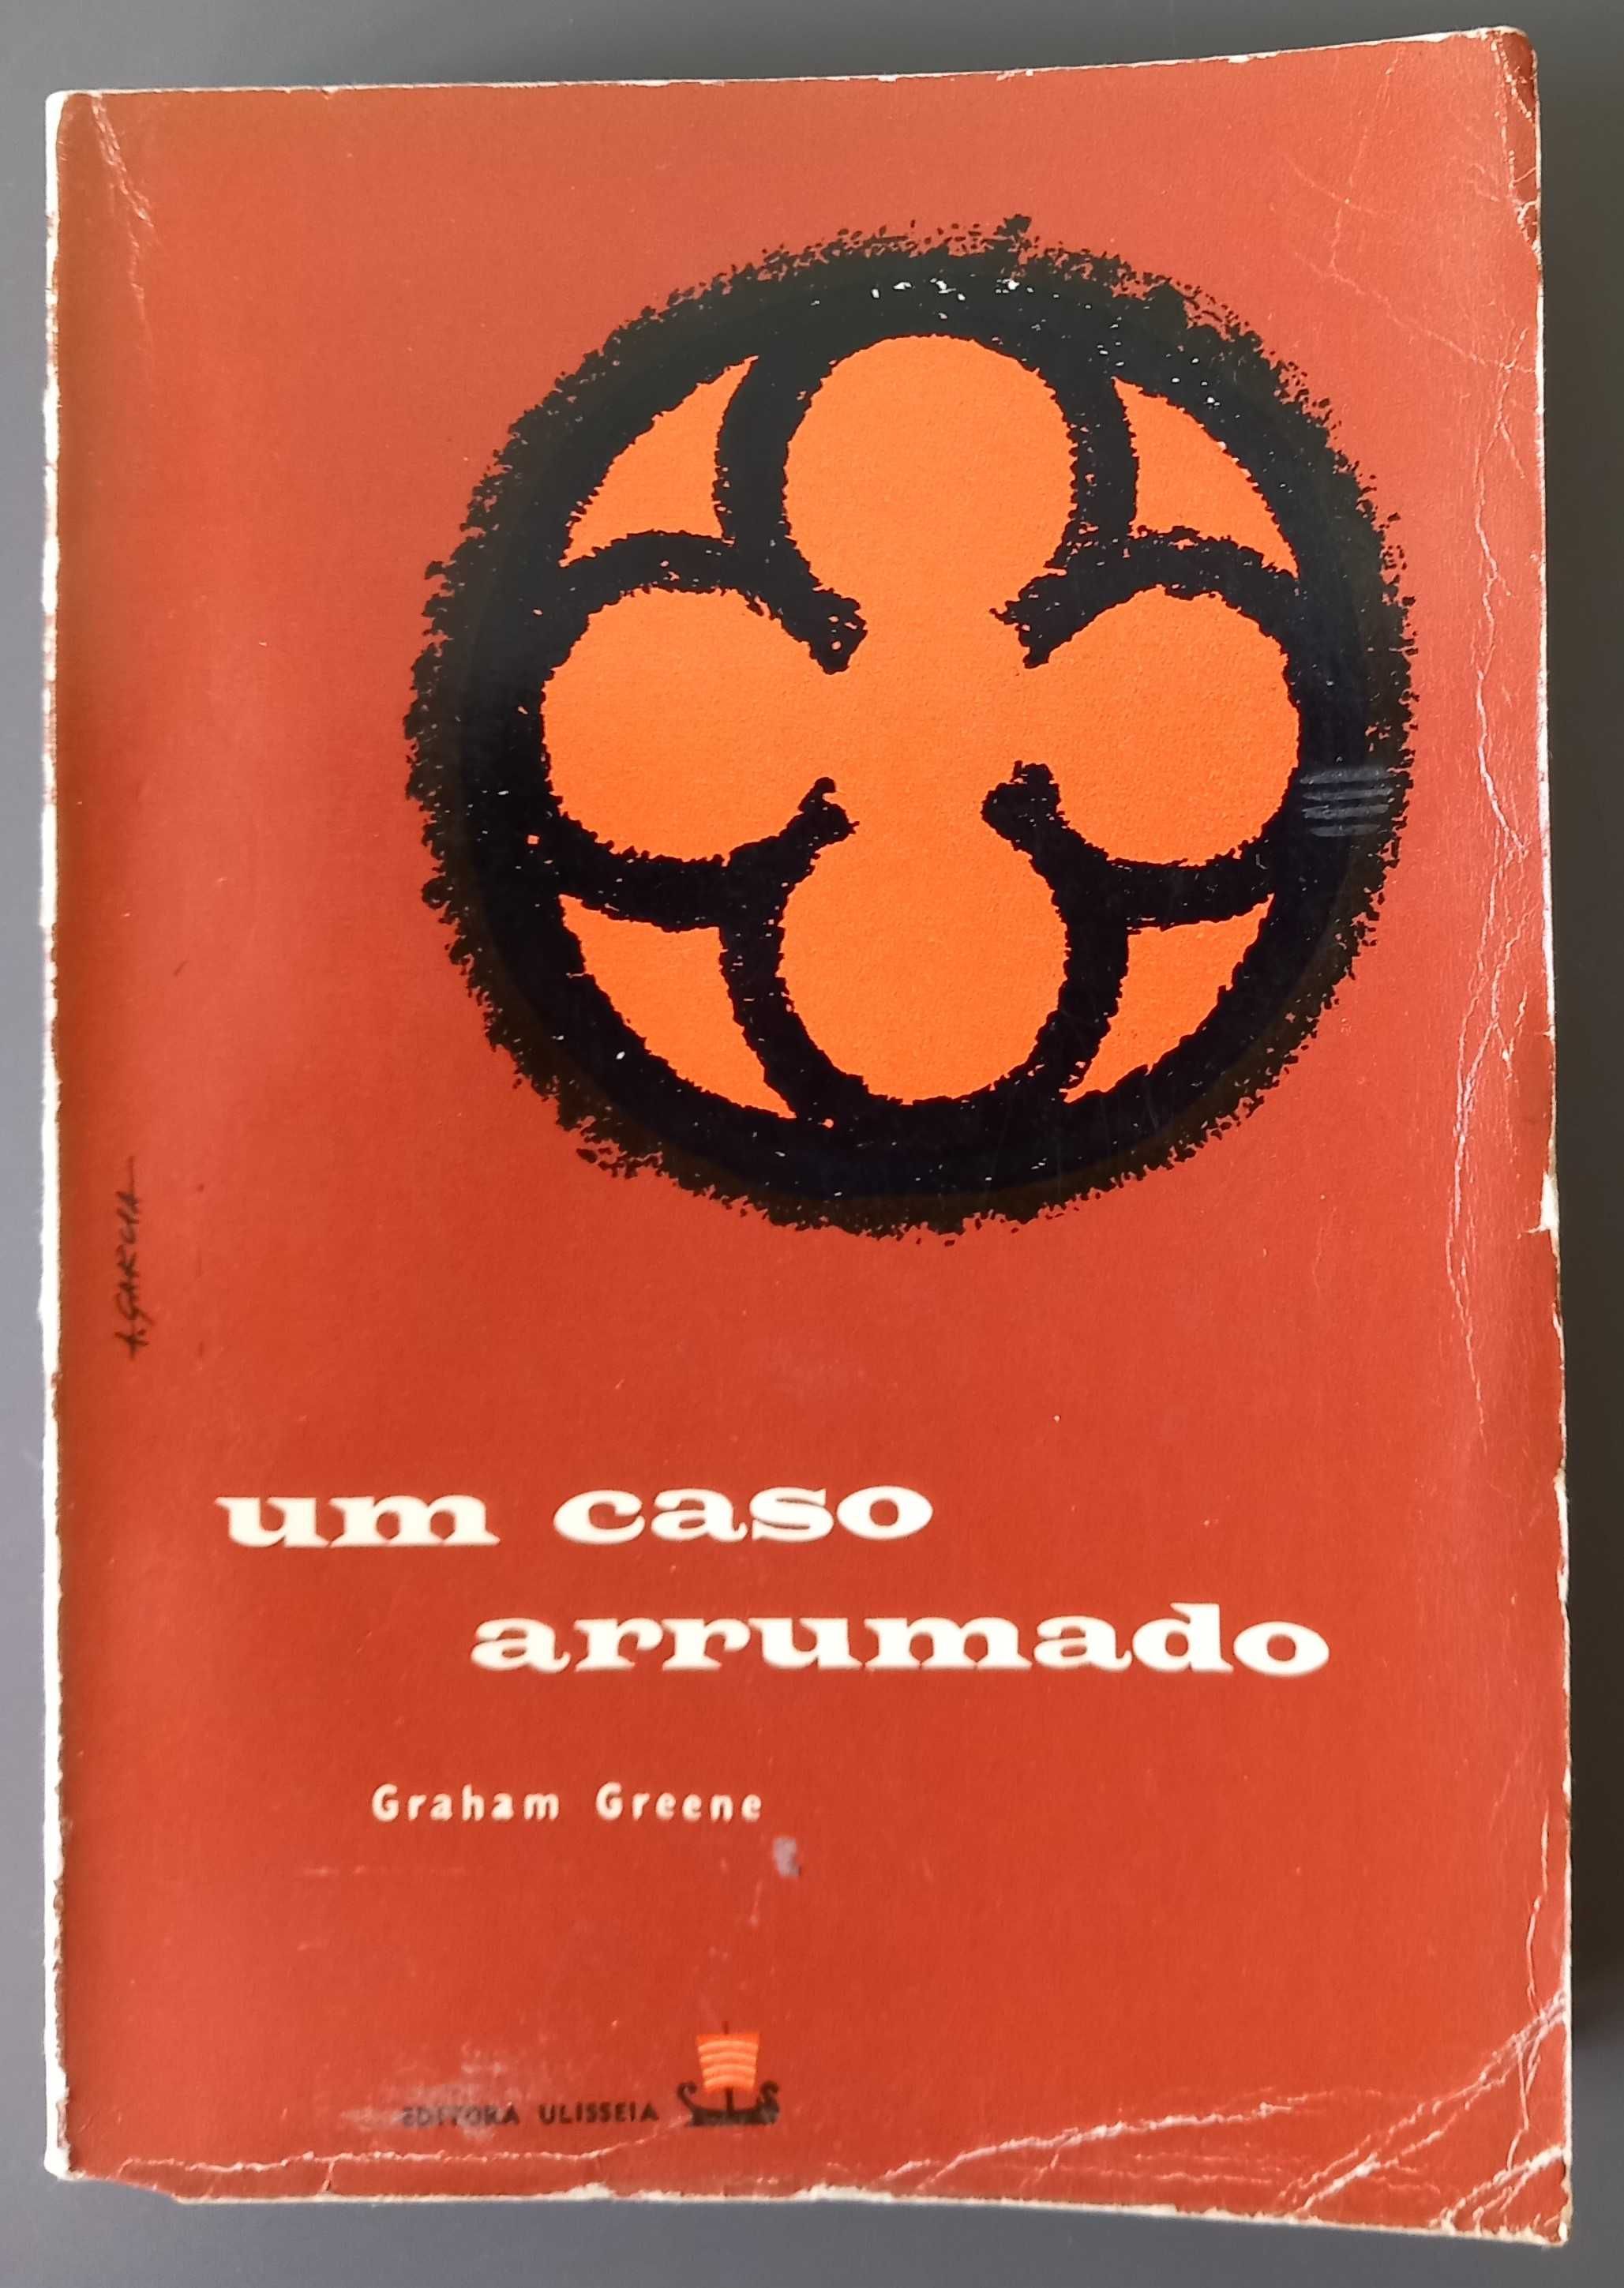 Graham Greene - Um Caso Arrumado